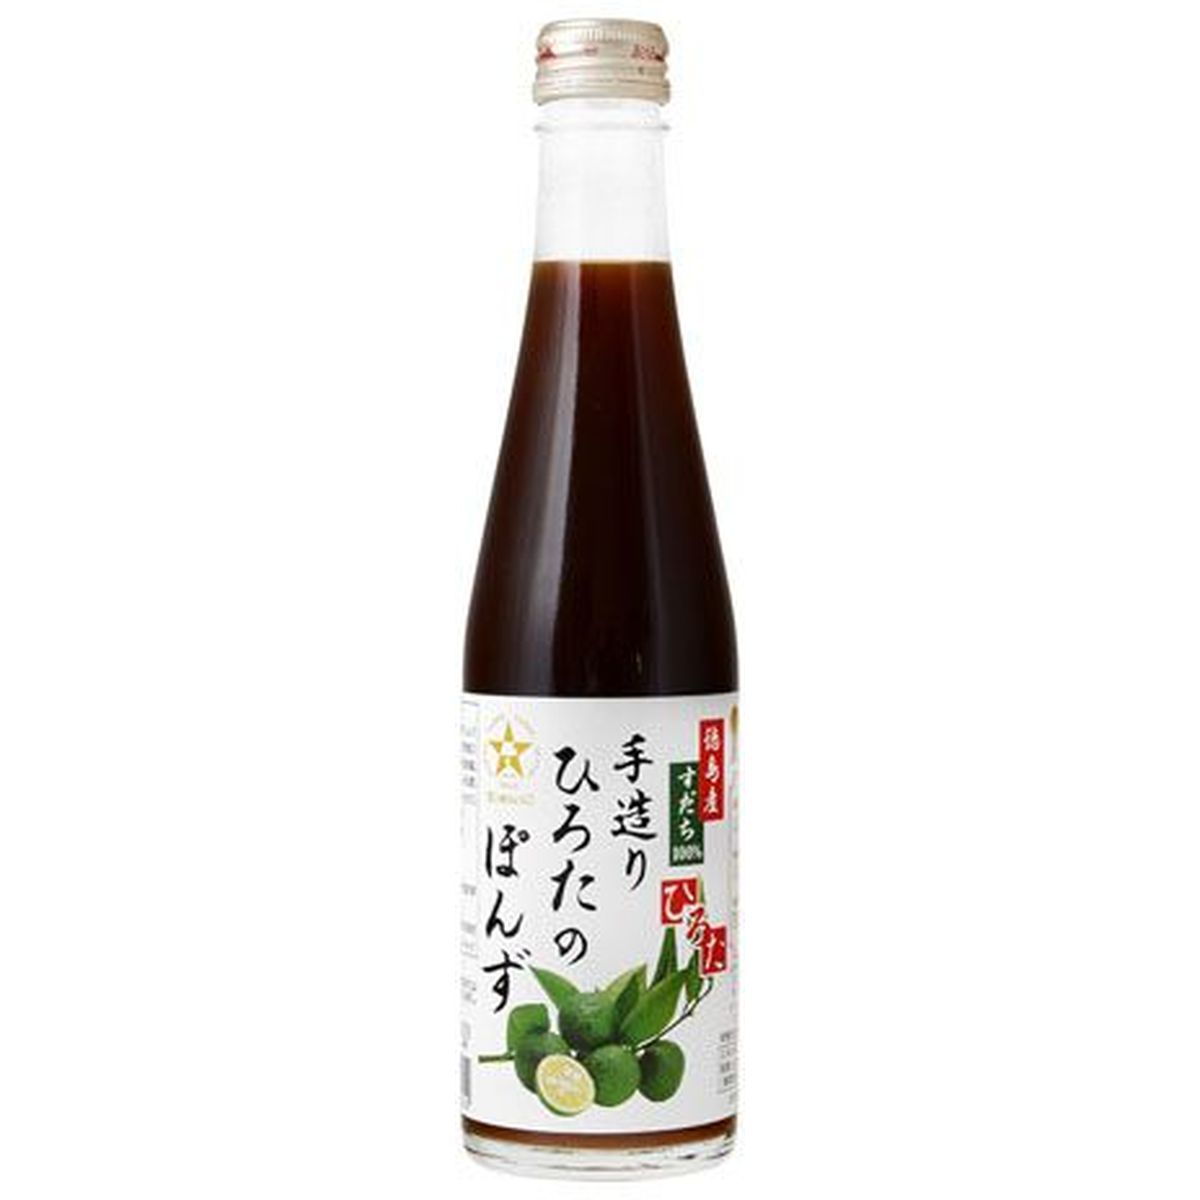 【12個入リ】ヒロタ テヅクリヒロタノポン酢 300ml